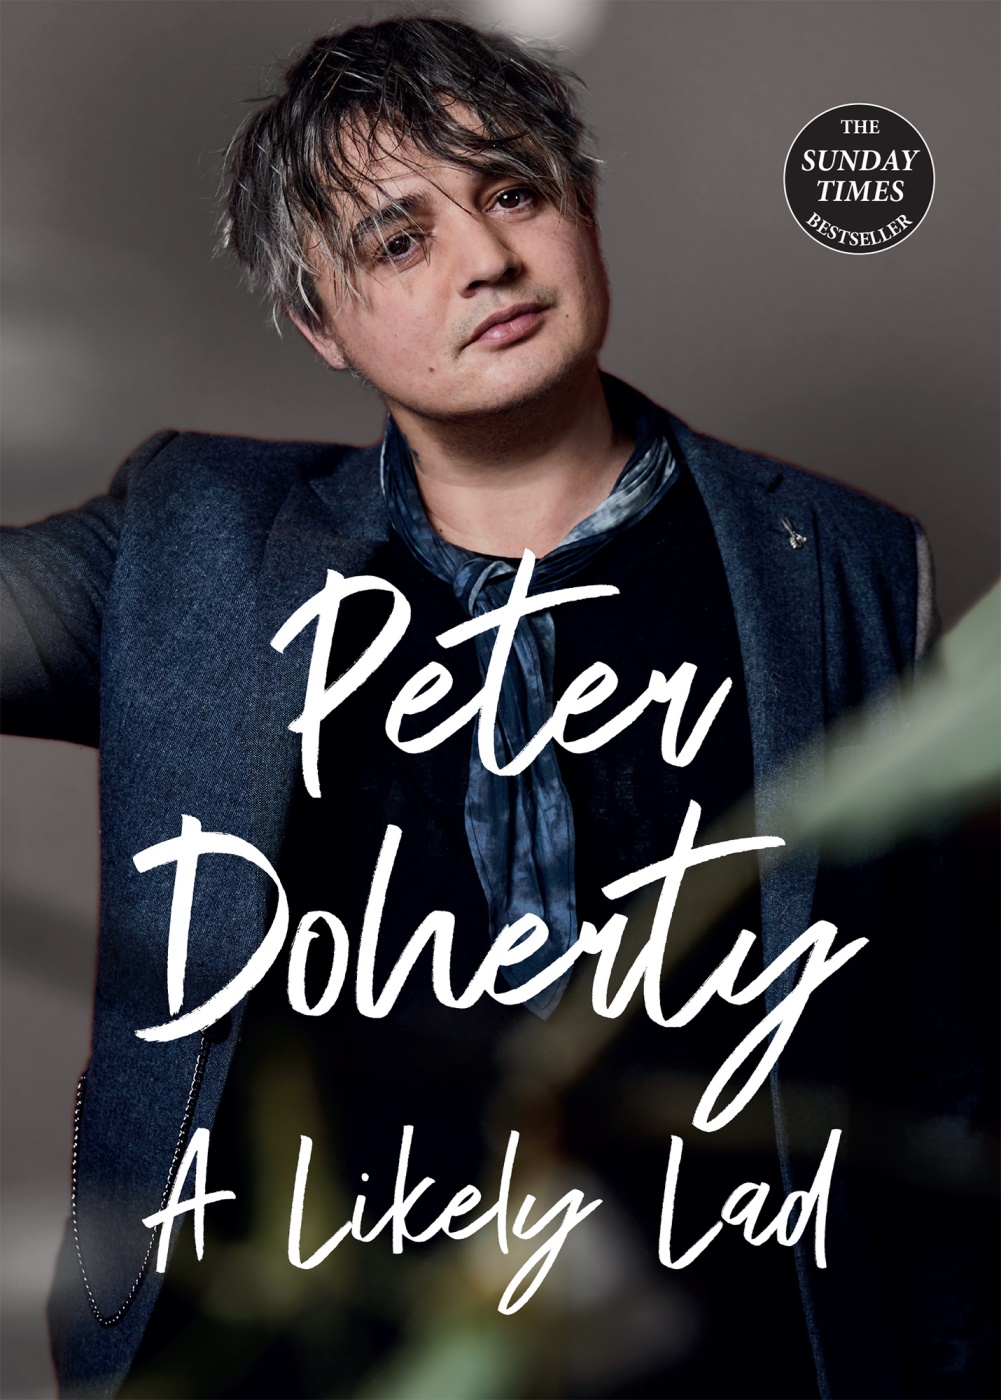 Pete Doherty, arriva in Italia la biografia “A Likely Lad”